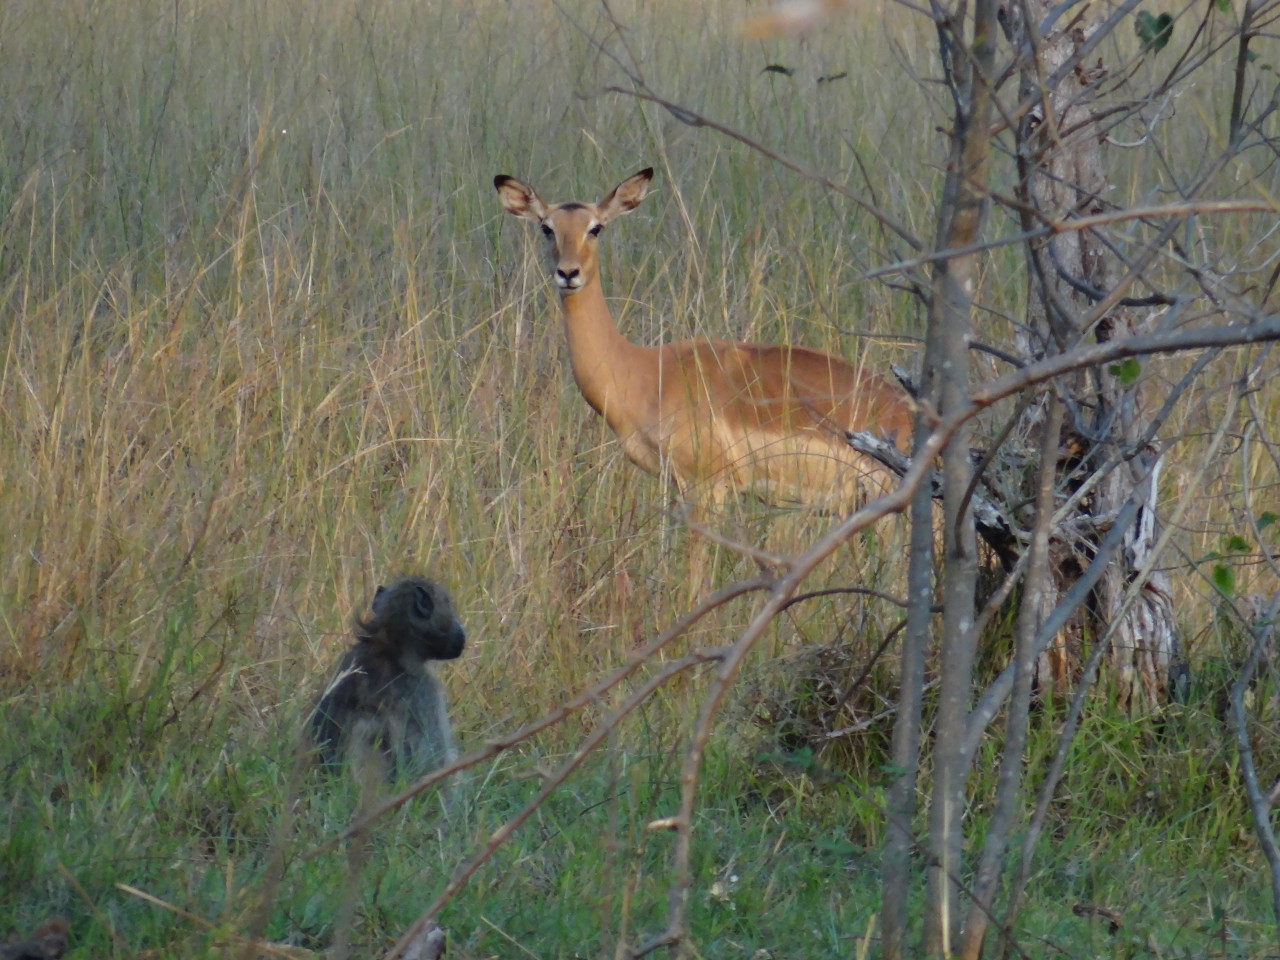 Impala and monkey on safari